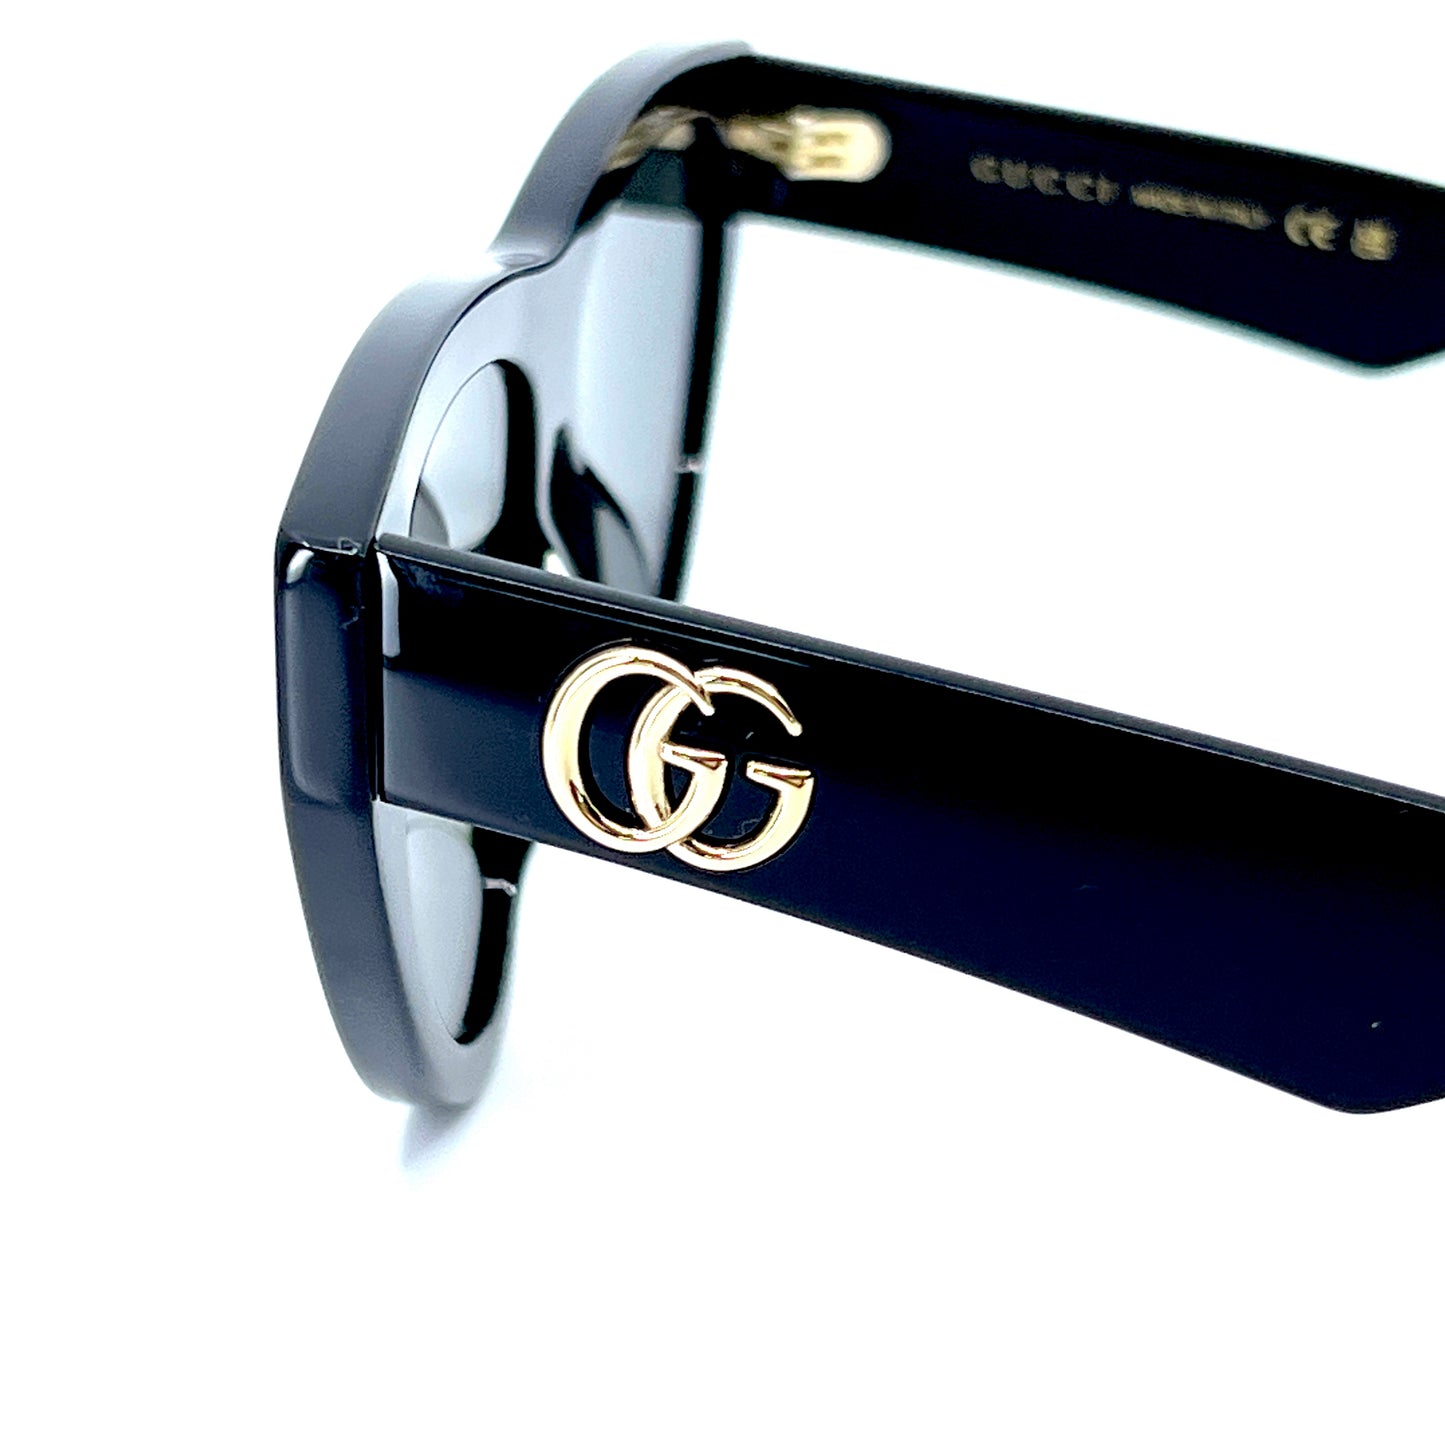 GUCCI Sunglasses GG1333S 001